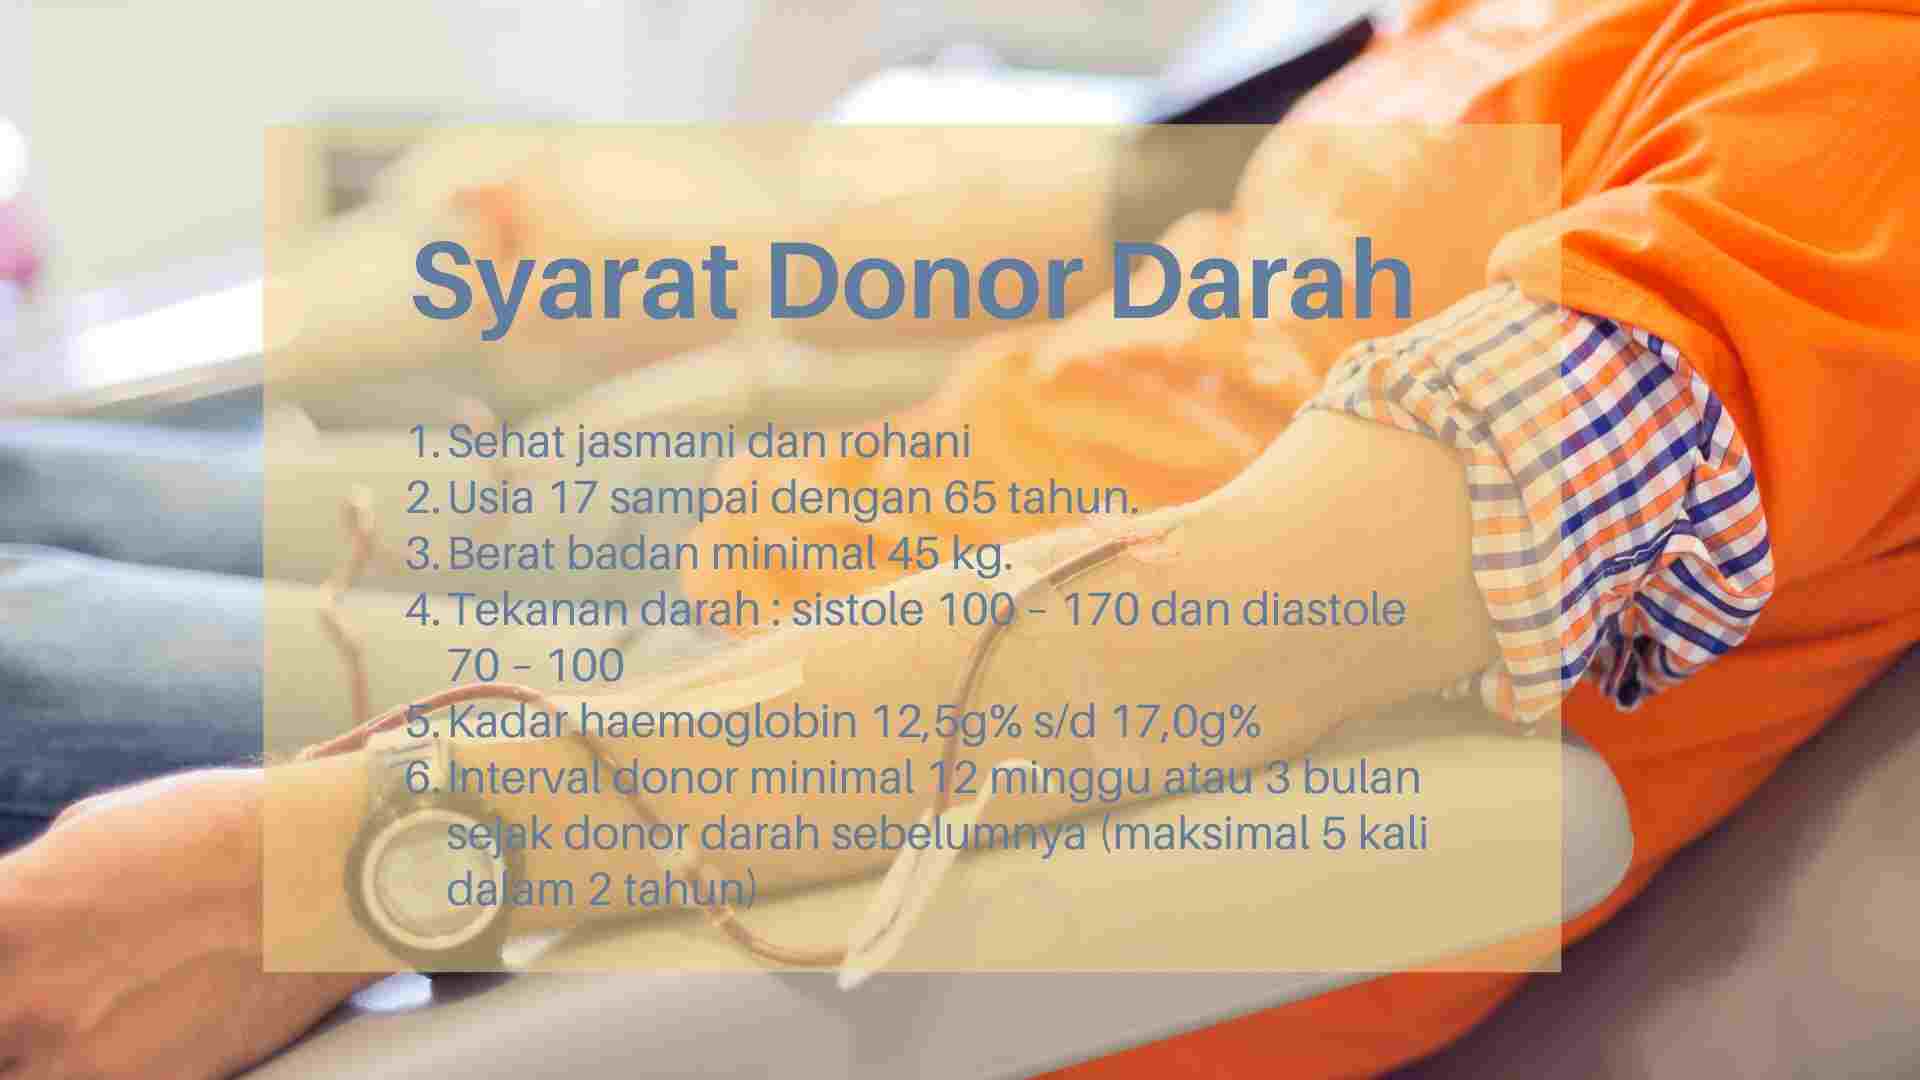 Syarat donor darah